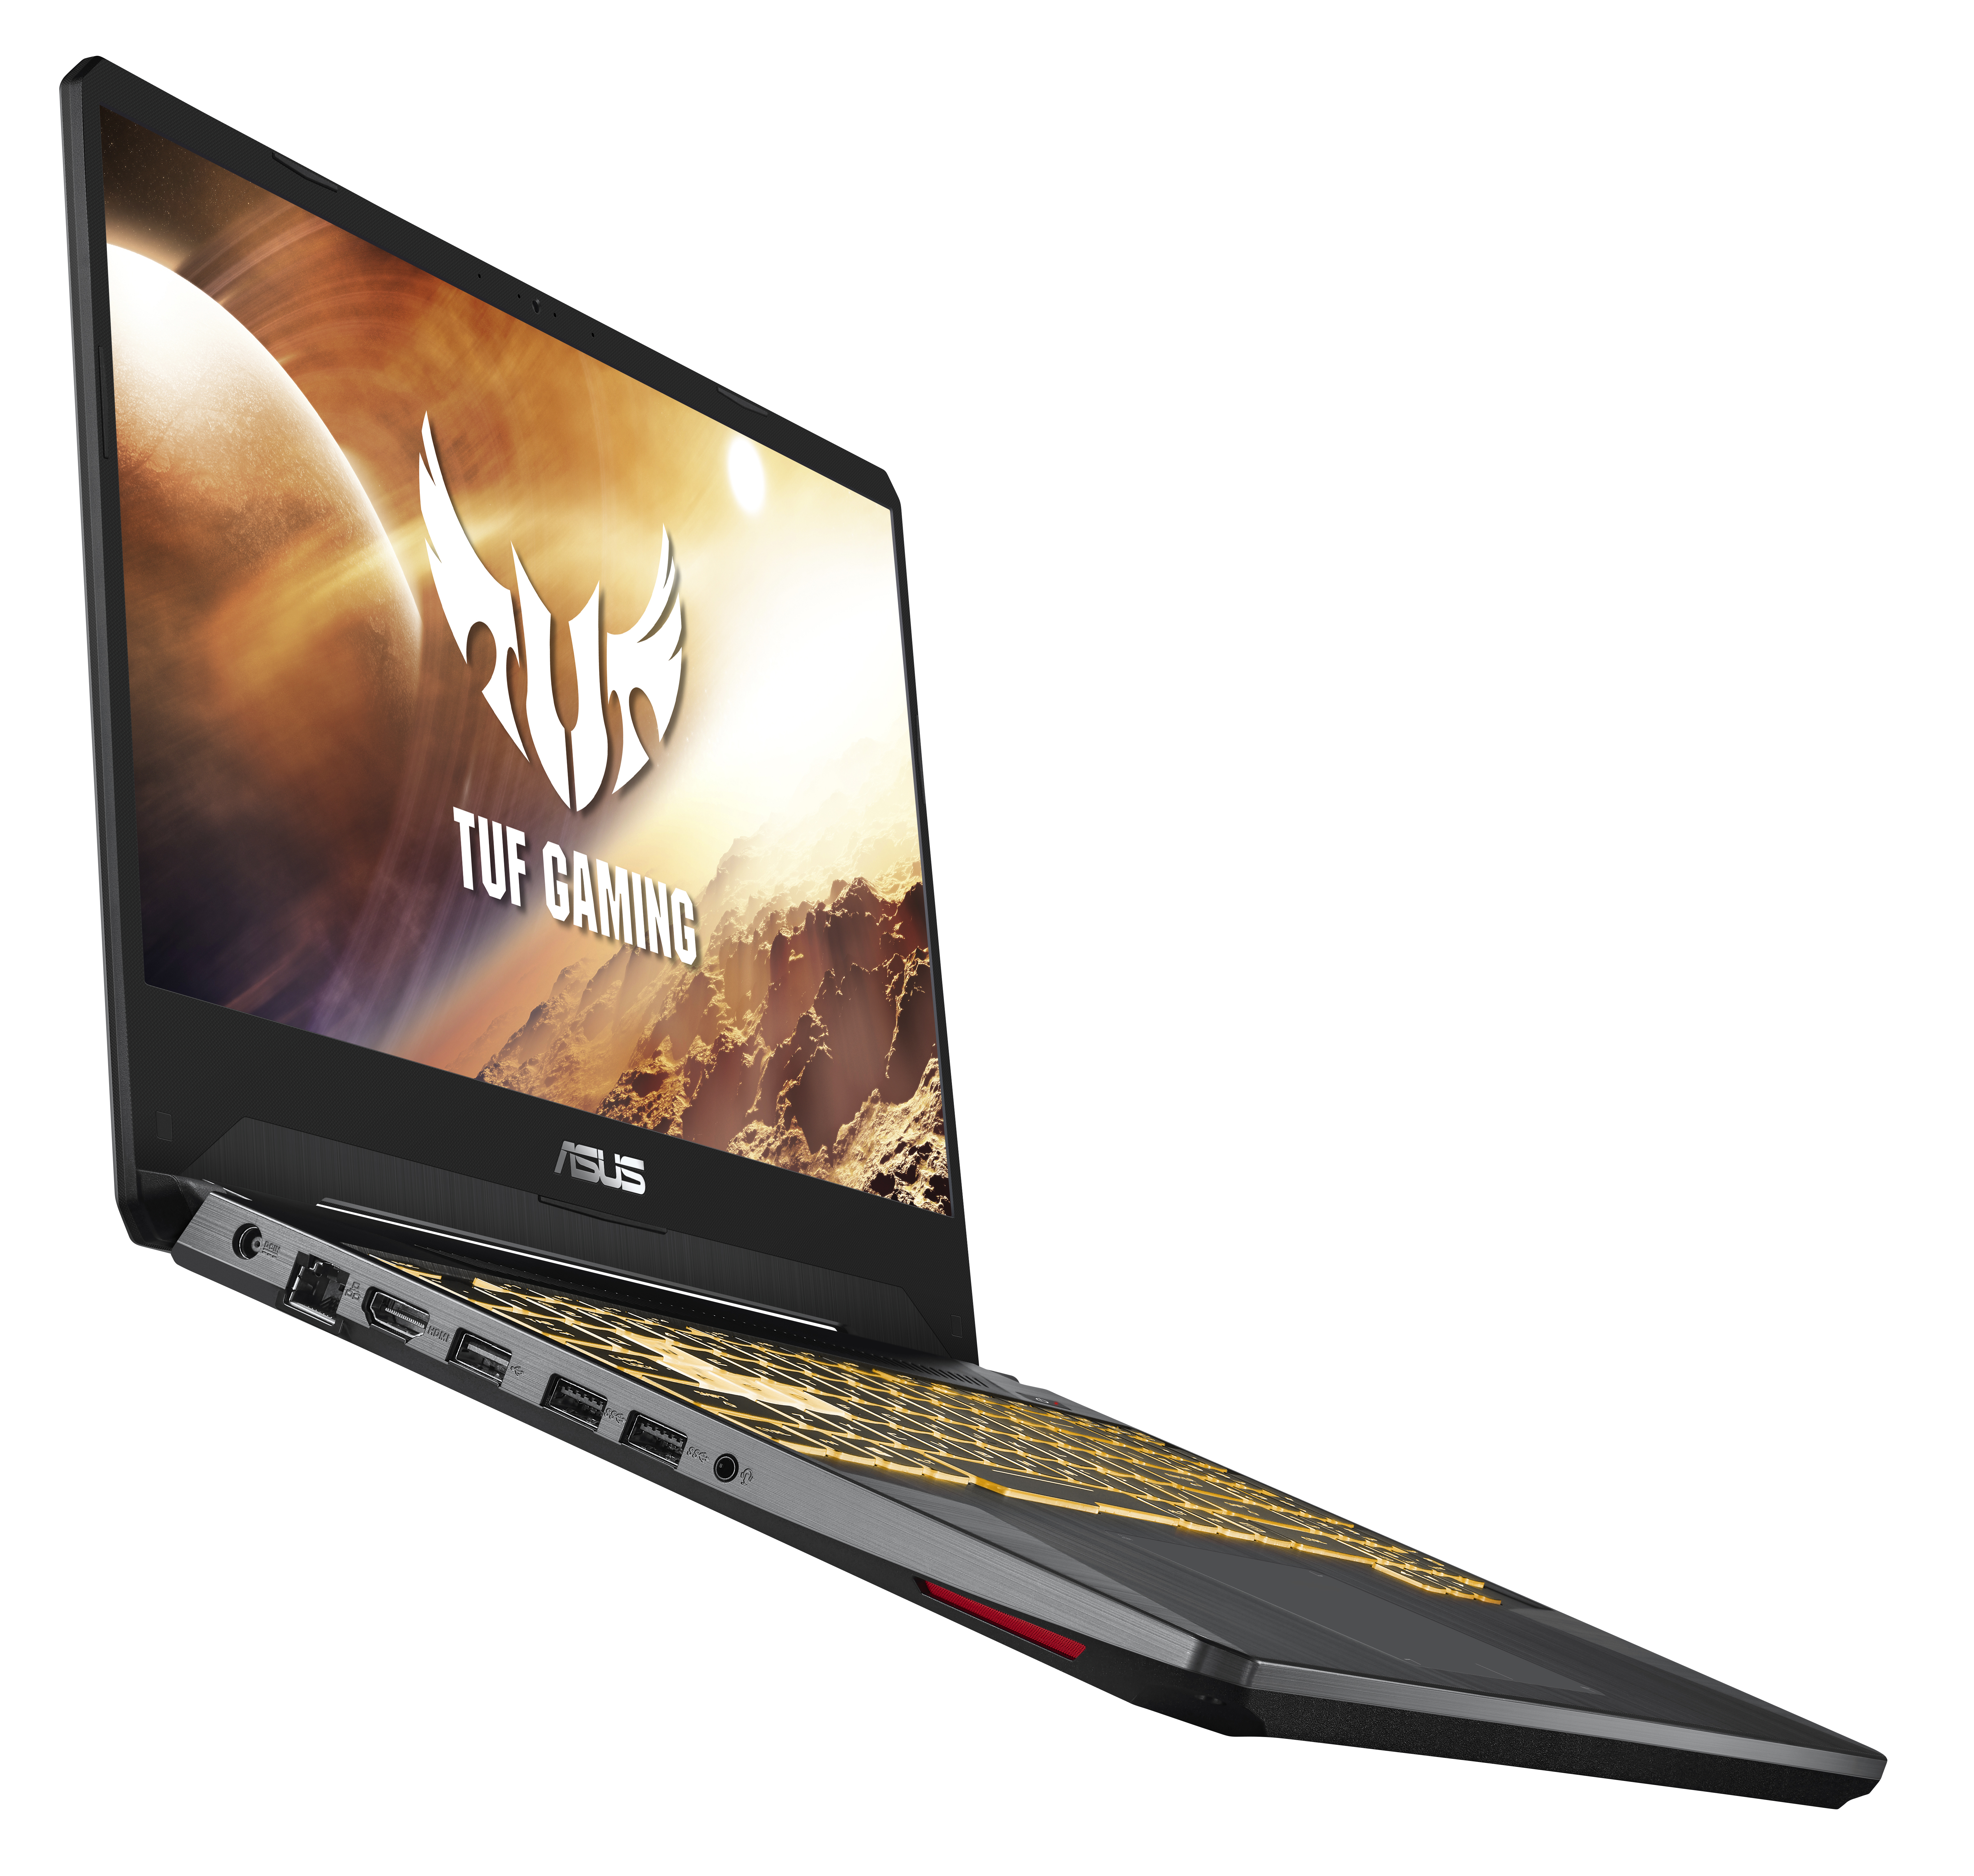 ASUS TUF FX505DT-WB72 Gaming Laptop